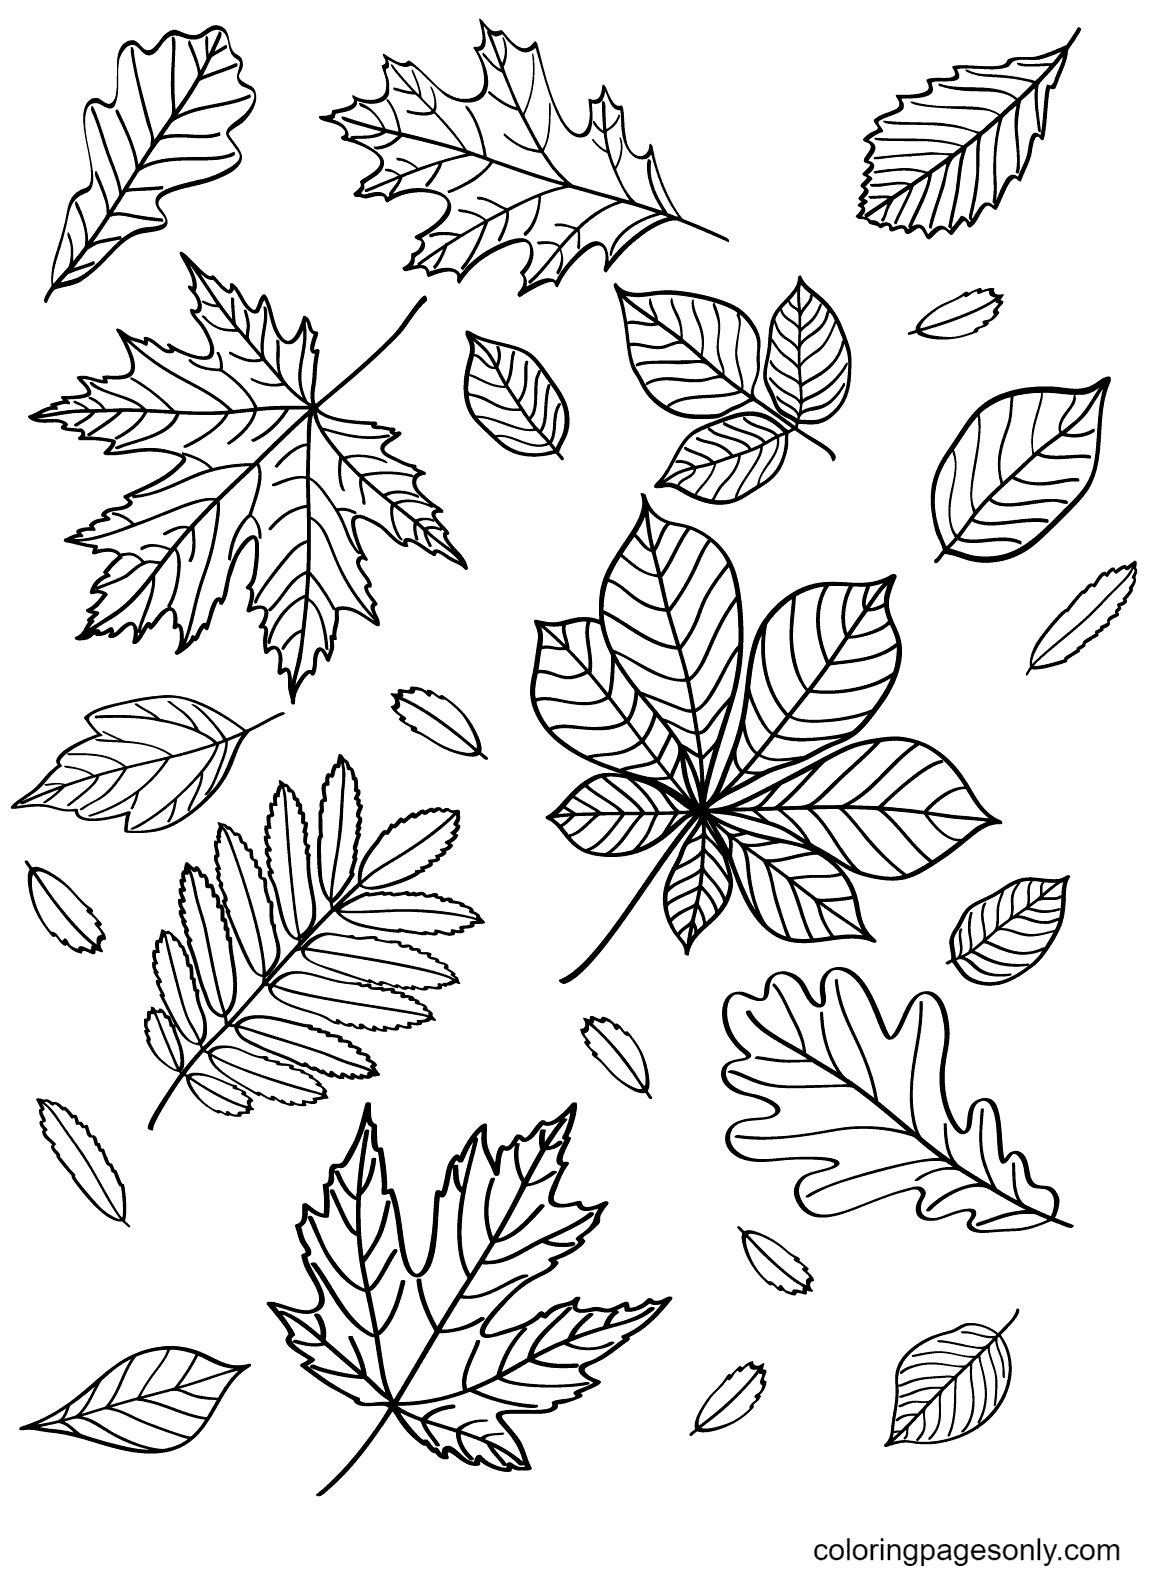 Feuilles d'automne exemptes de feuilles d'automne